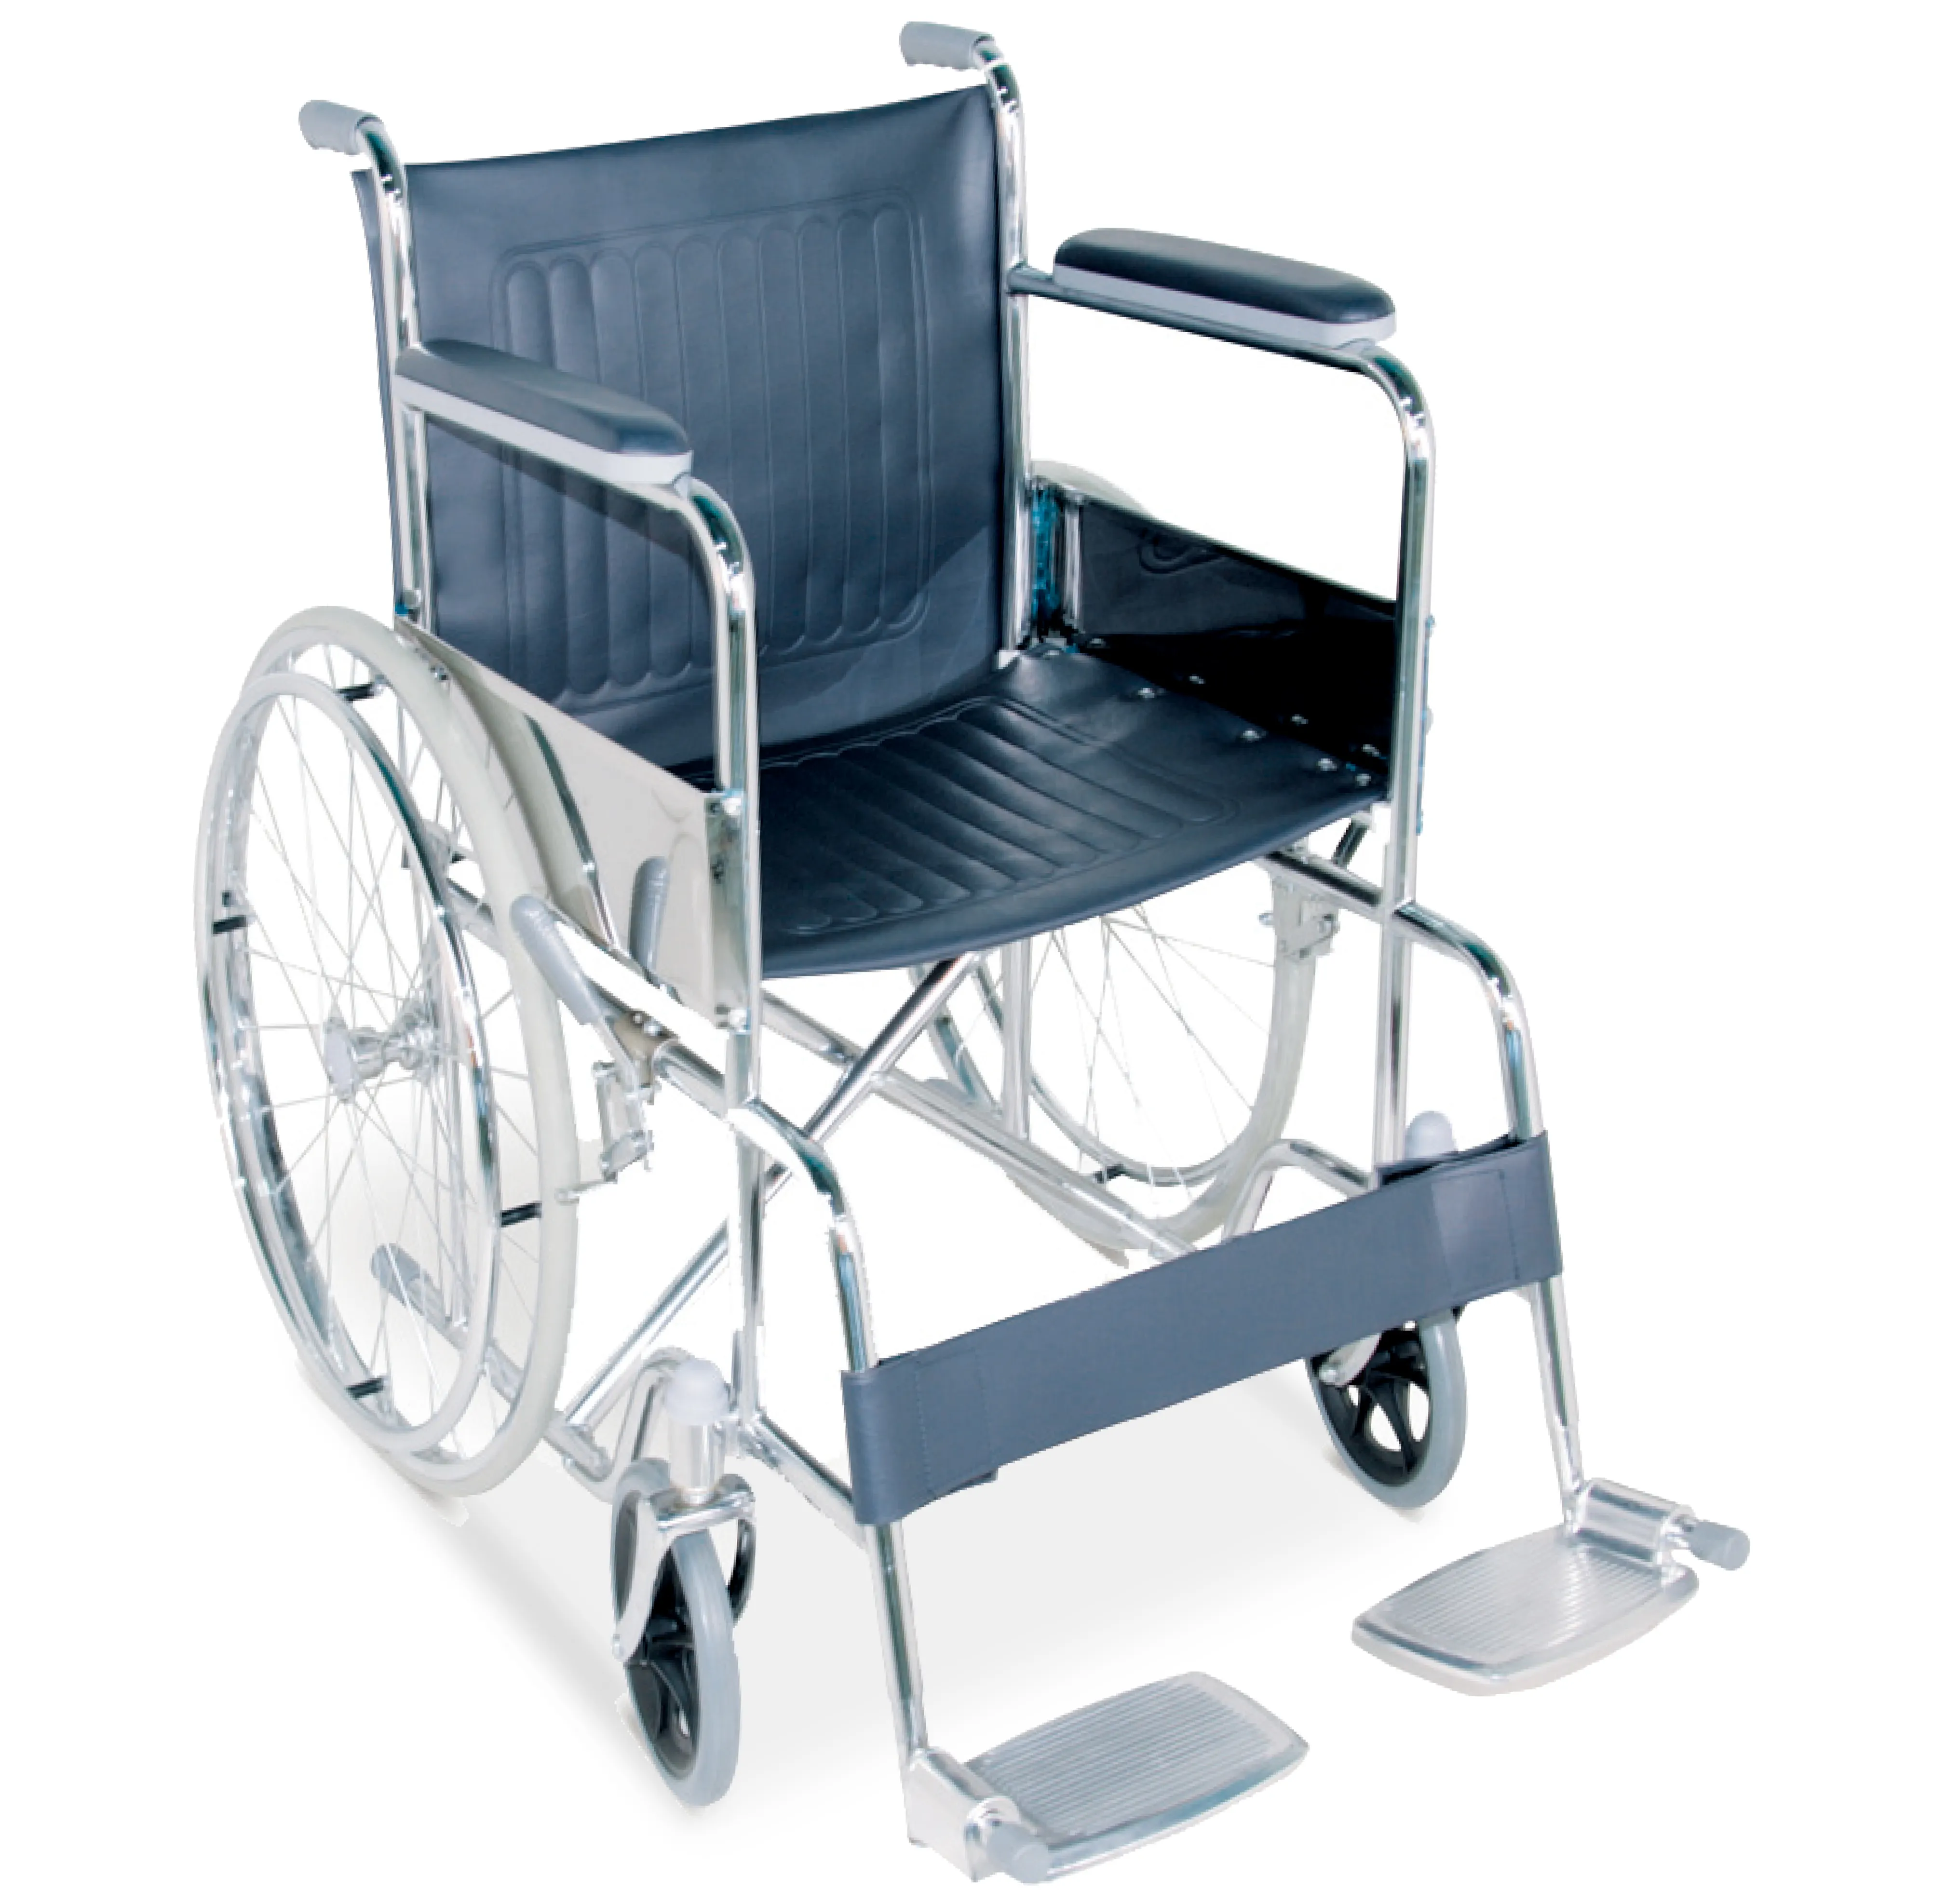 Sedia a rotelle pieghevole per ospedale usata per sedie a rotelle in acciaio di alta qualità